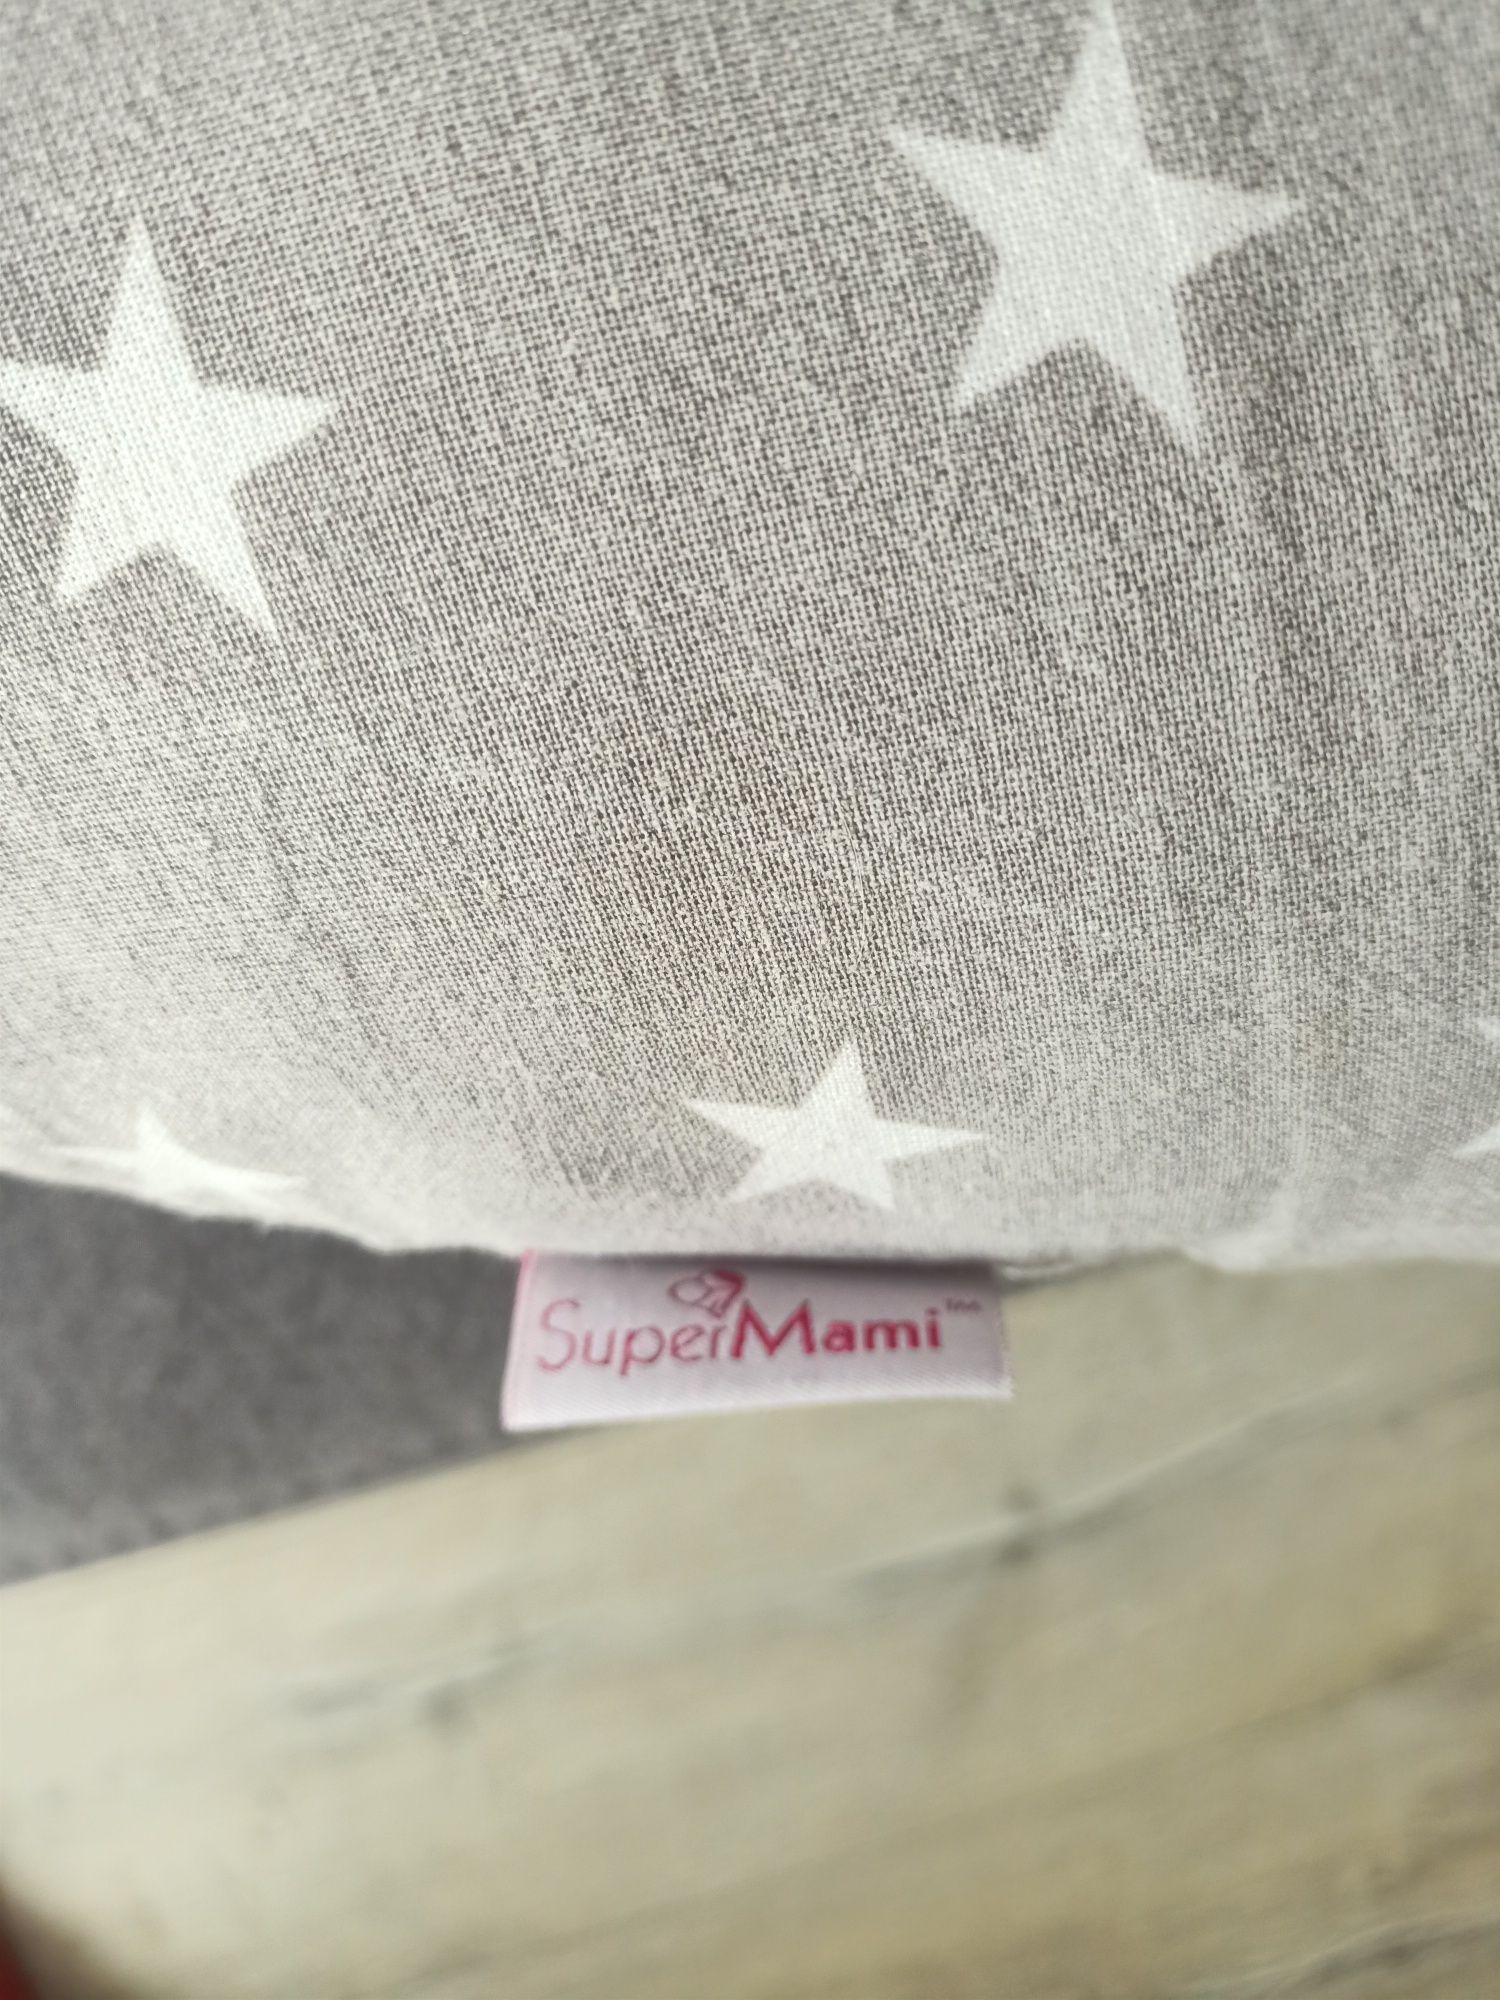 Super Mami "C" Poduszka dla kobiet w ciąży